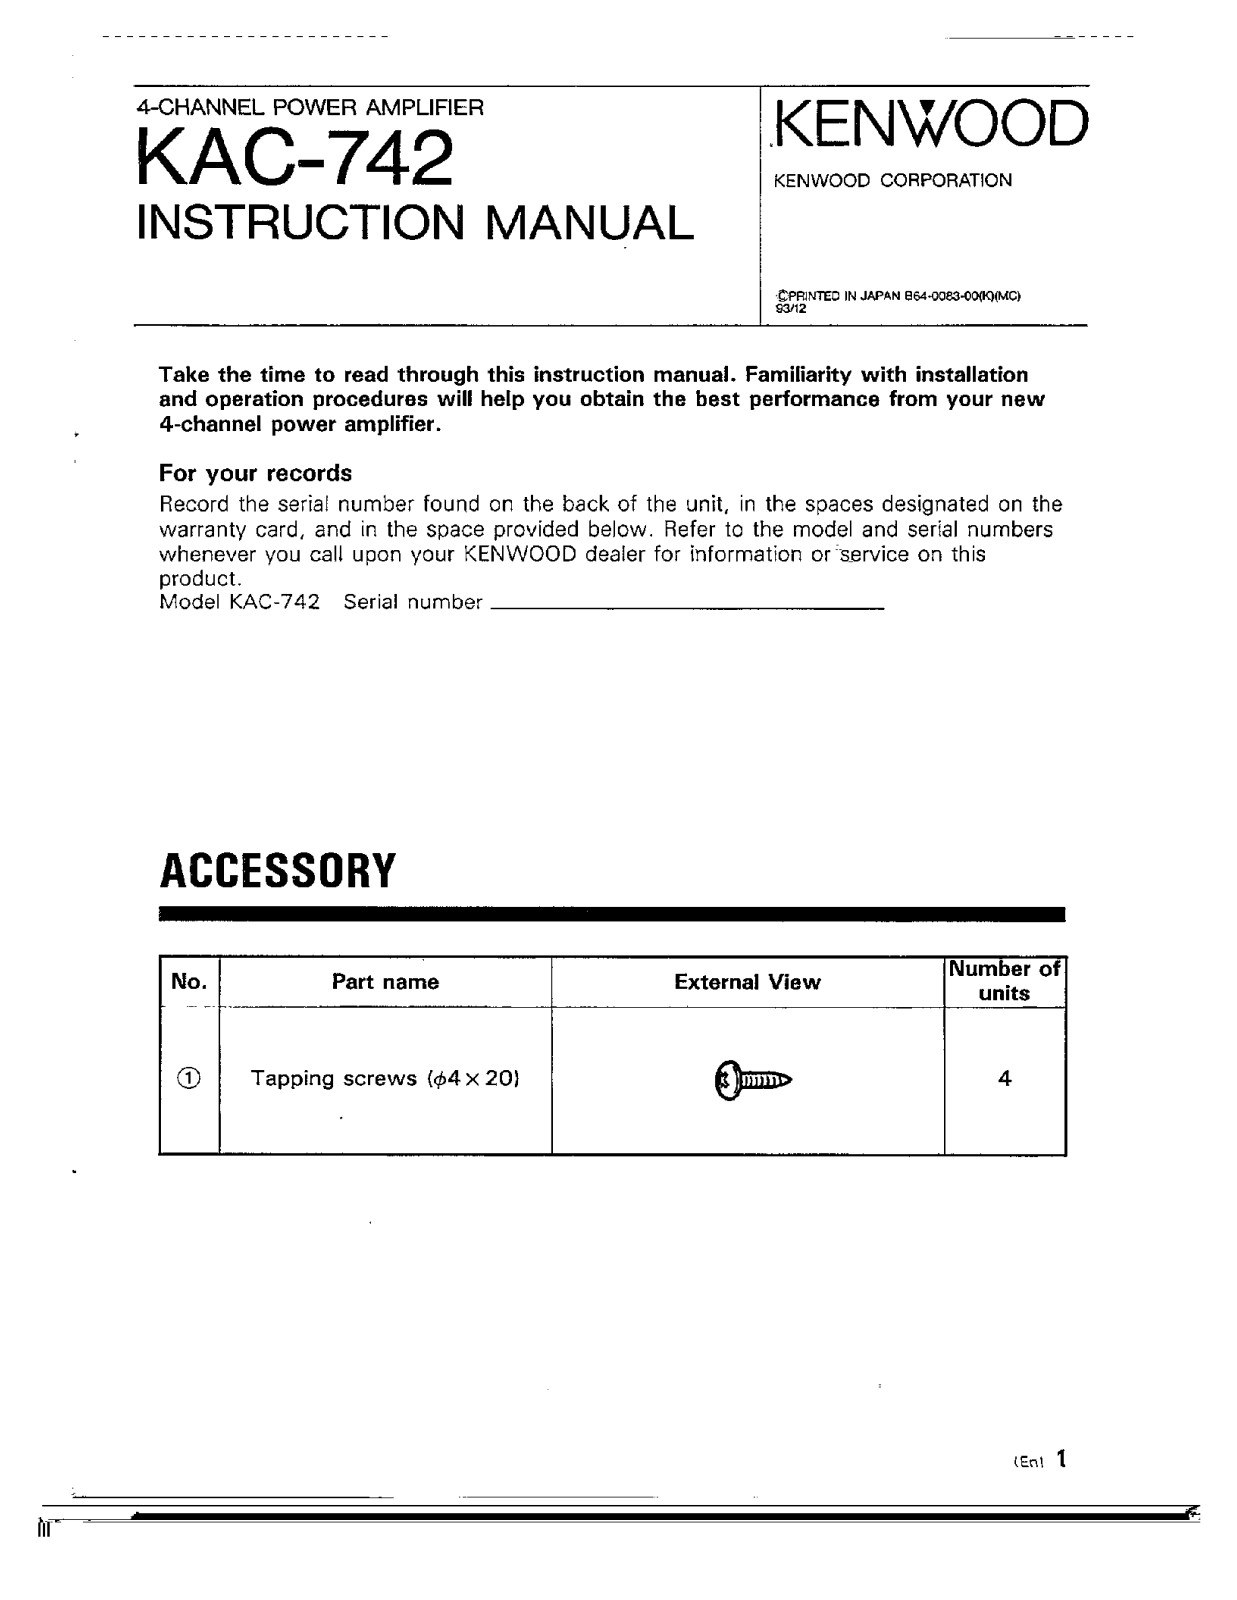 Kenwood KAC-742 Owner's Manual